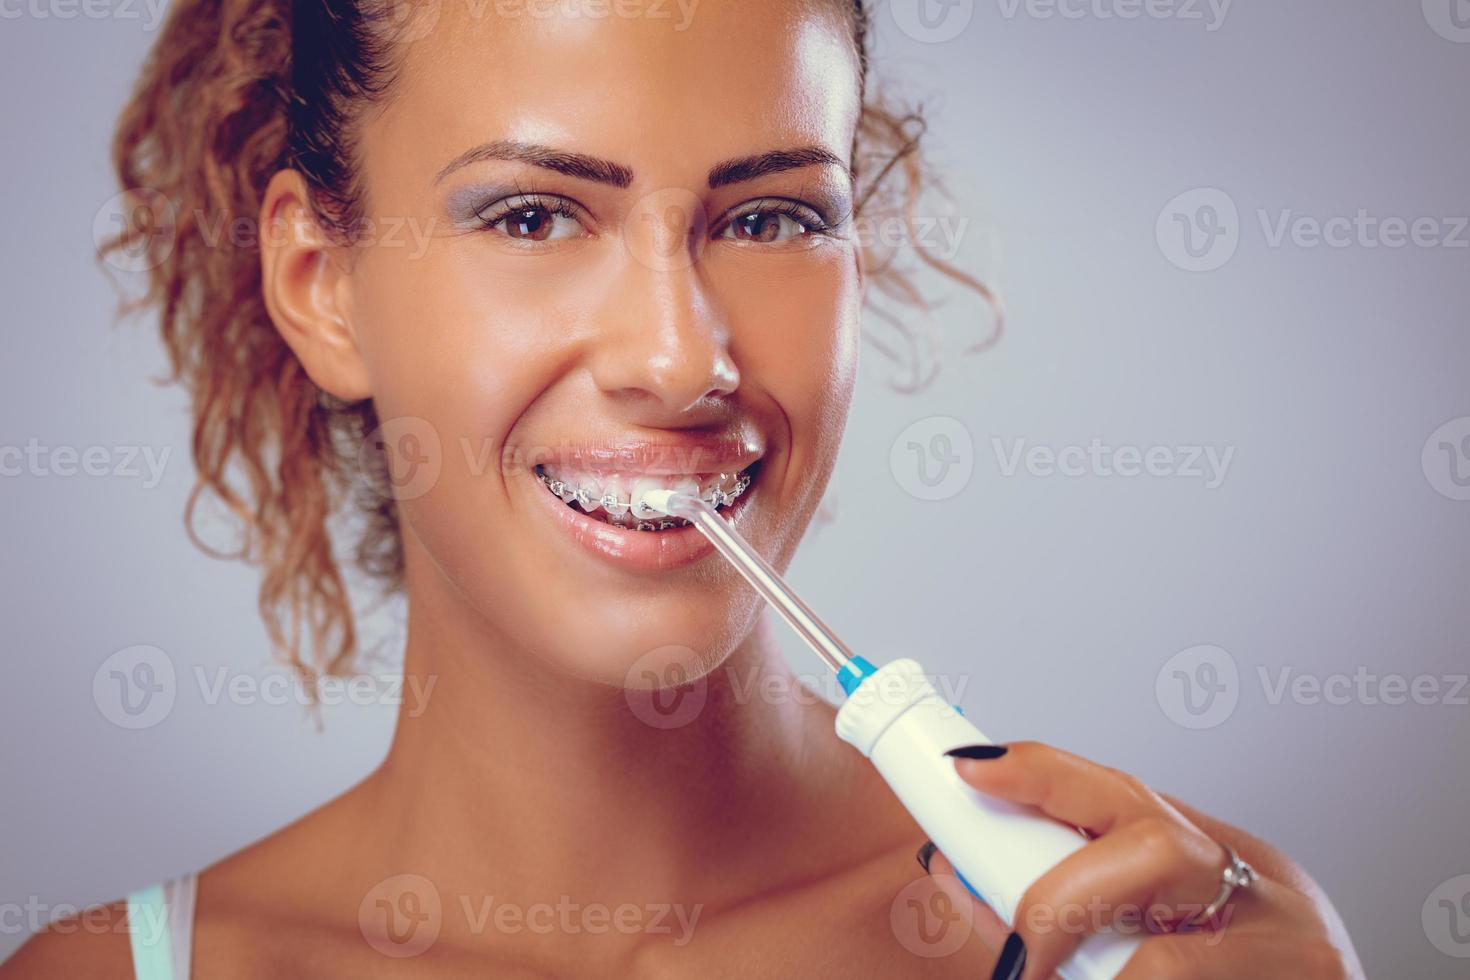 cepillarse los dientes con irrigador dental foto